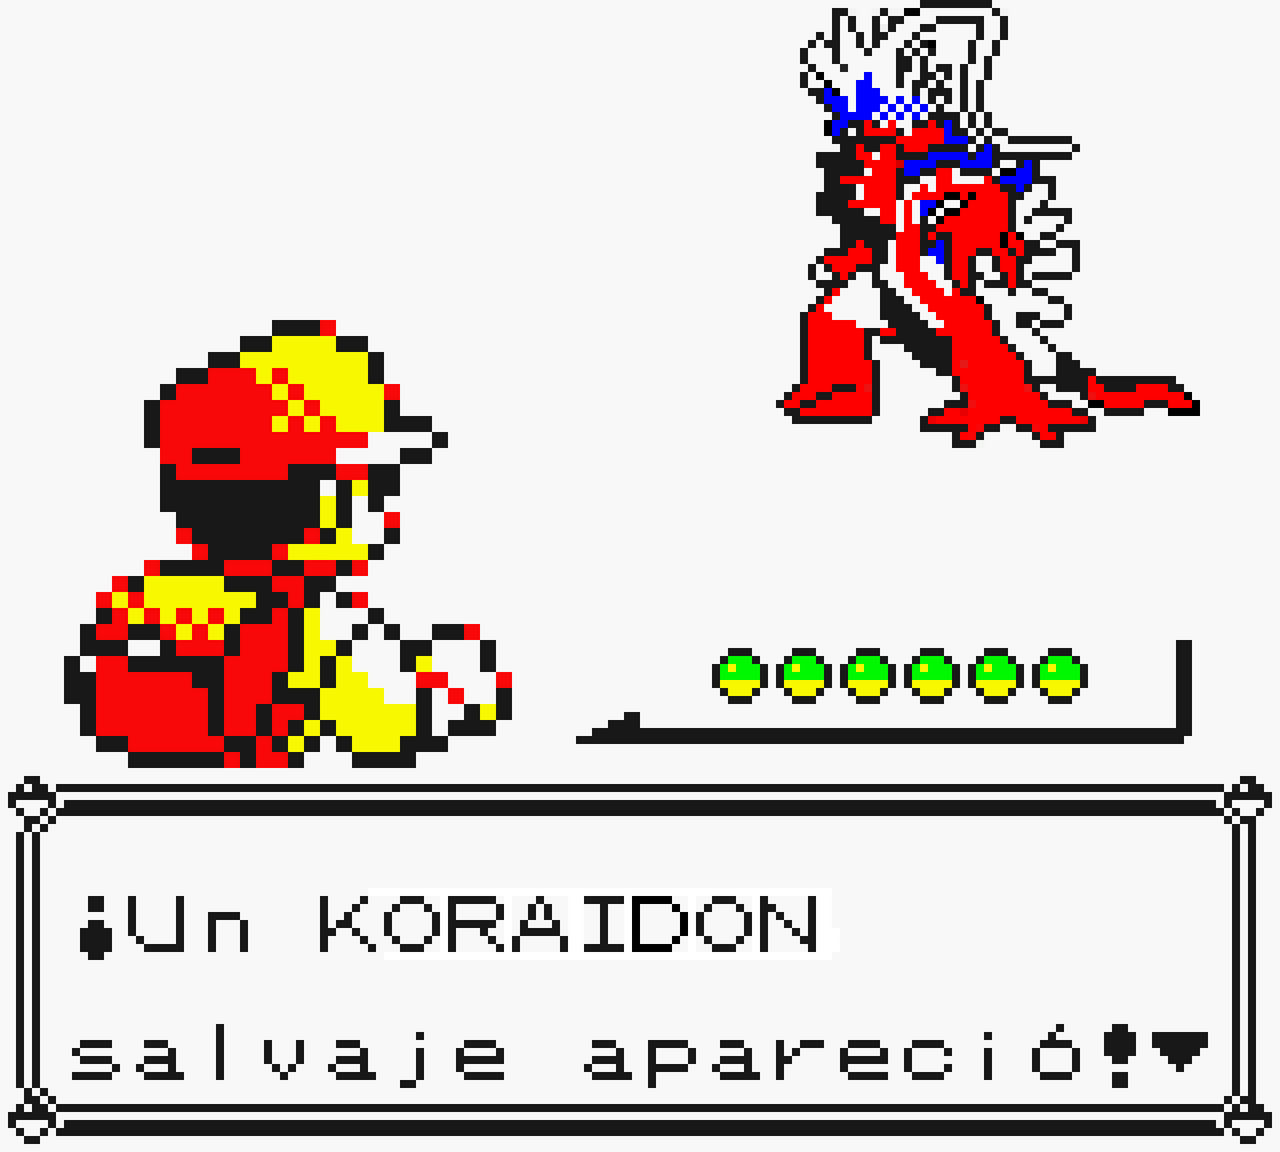 Koraidon and Miraidon Shiny version by LordCrimsoner on DeviantArt